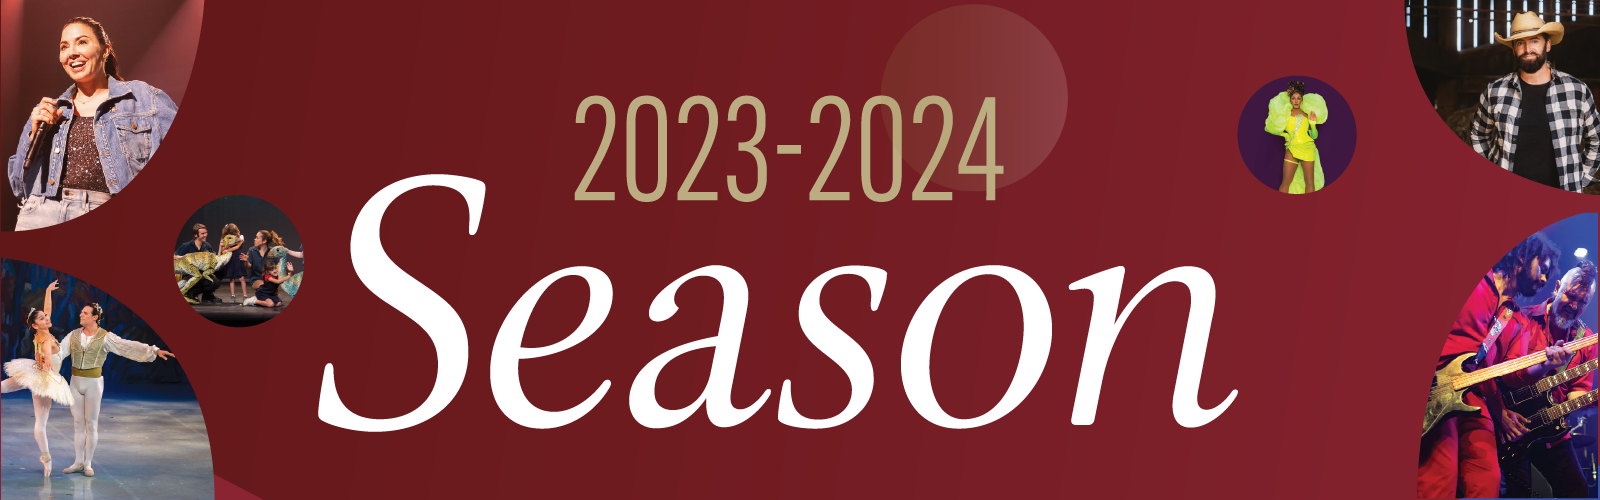 Sanderson Centre 2022-2023 Season